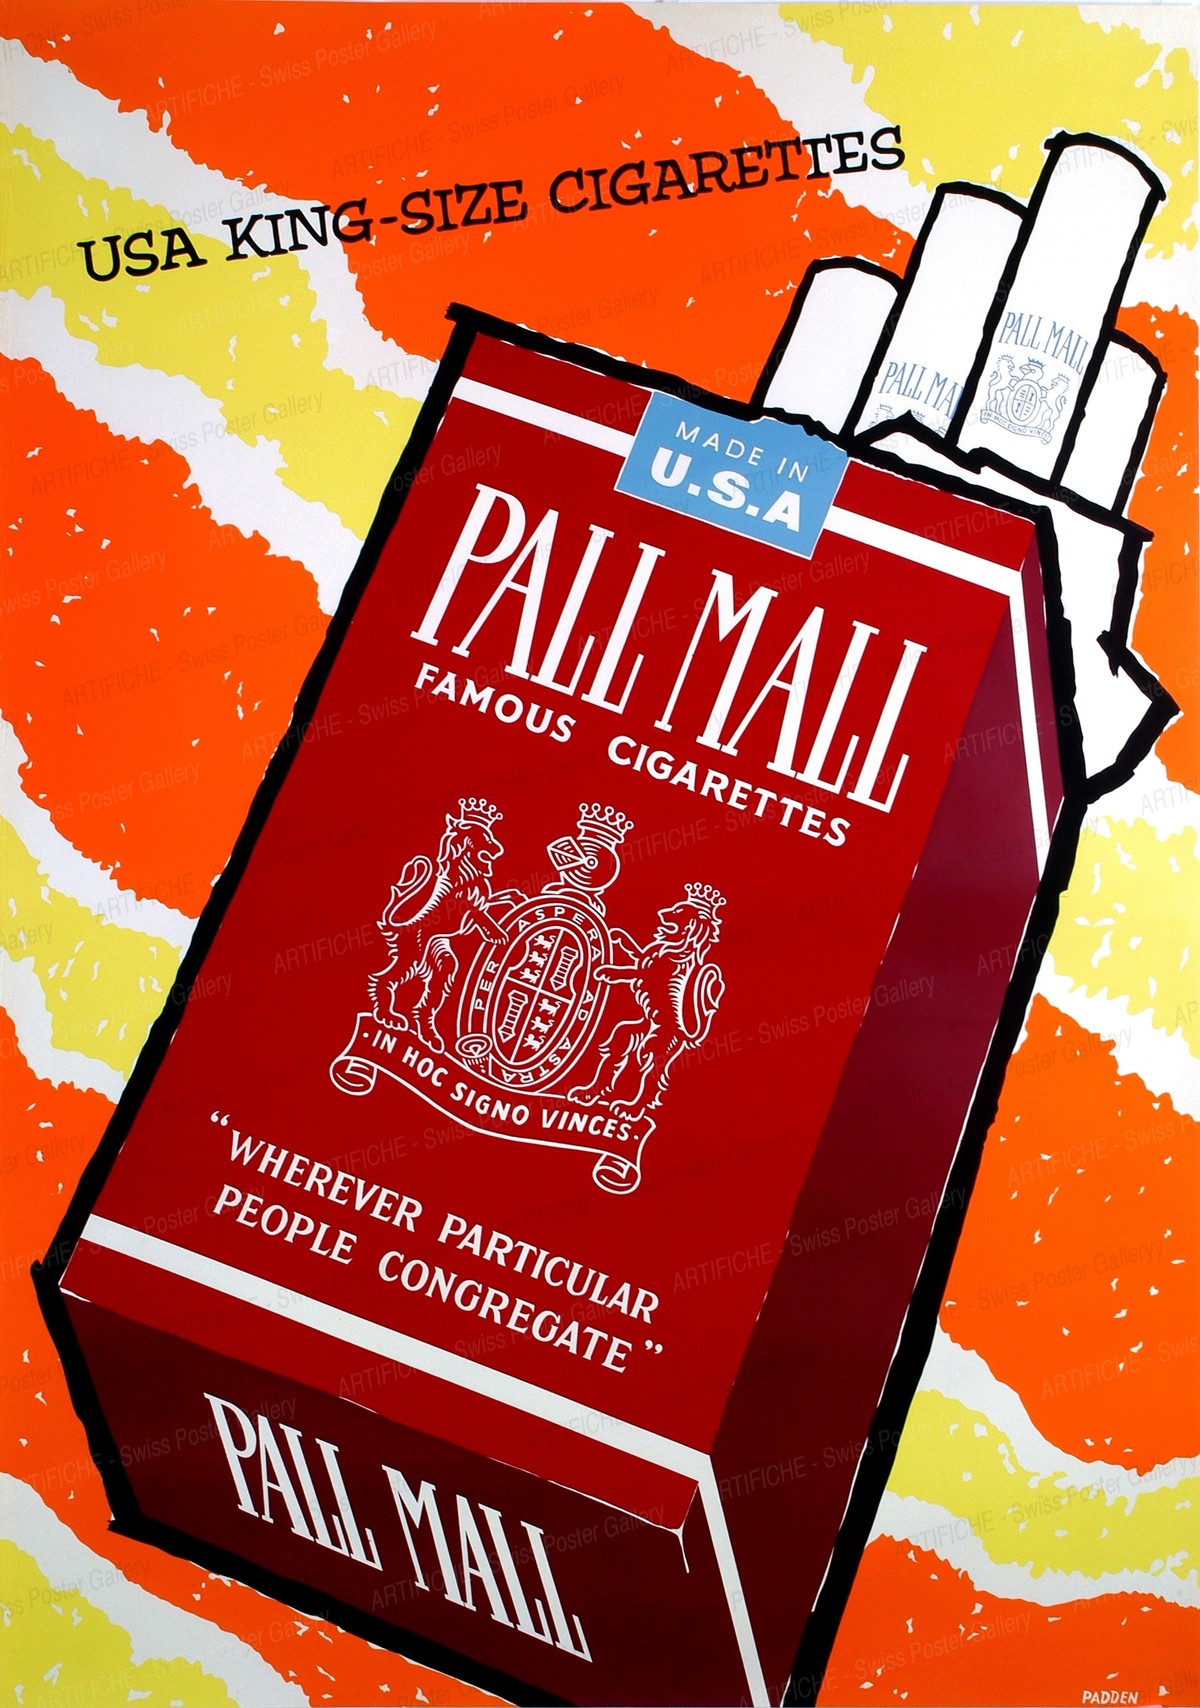 PALL MALL – USA King Size Cigarettes, Daphne Padden